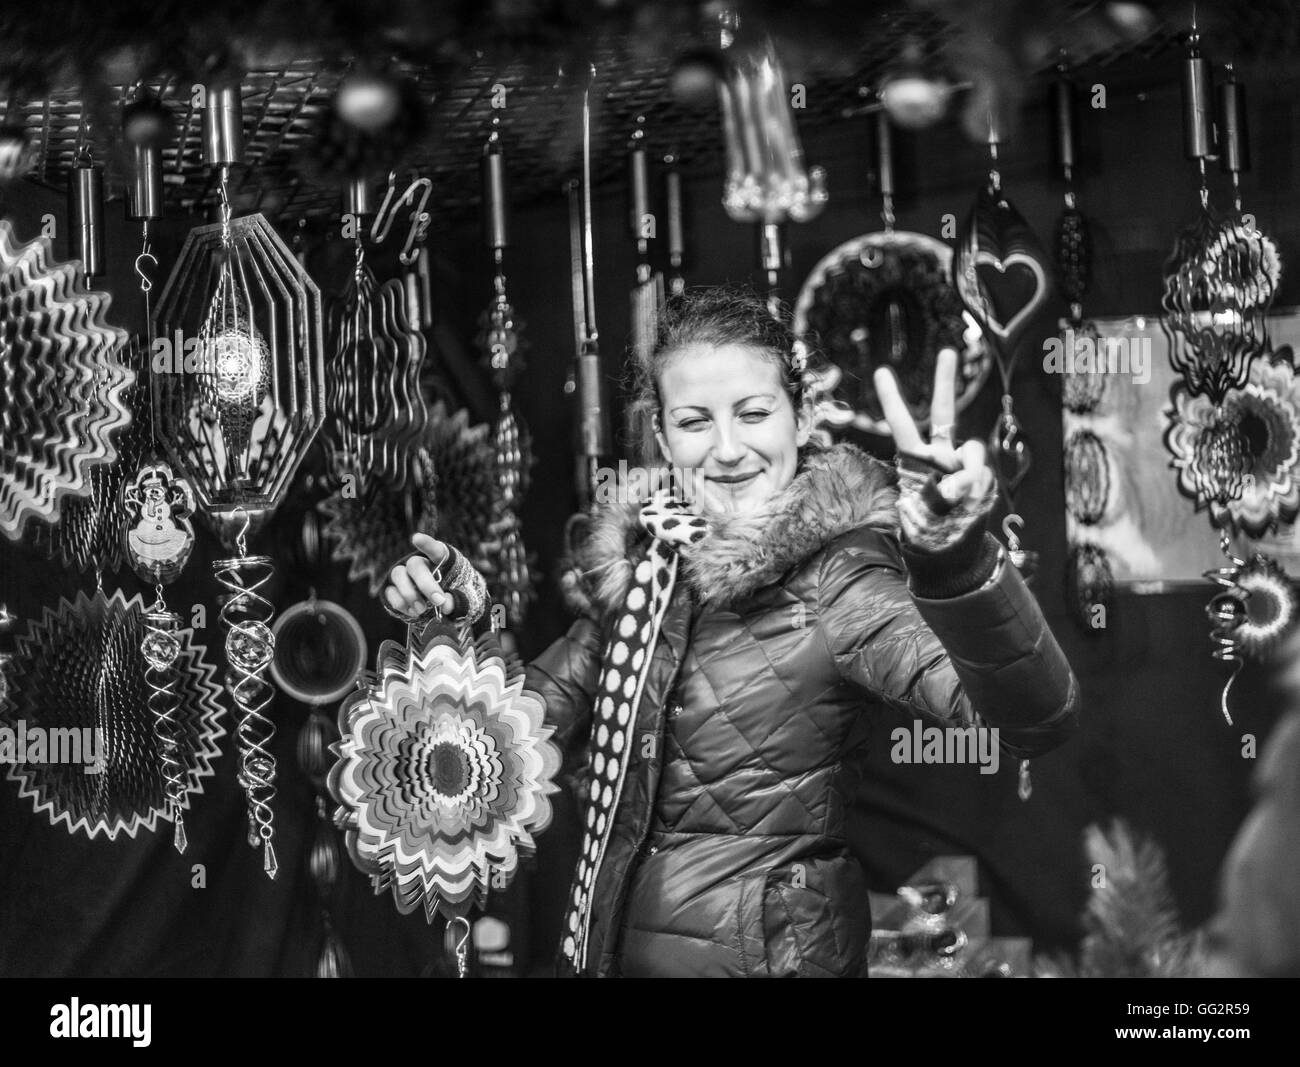 Weihnachten-Marktstände in Manchester-Frau verkaufen Wind Reize Stockfoto